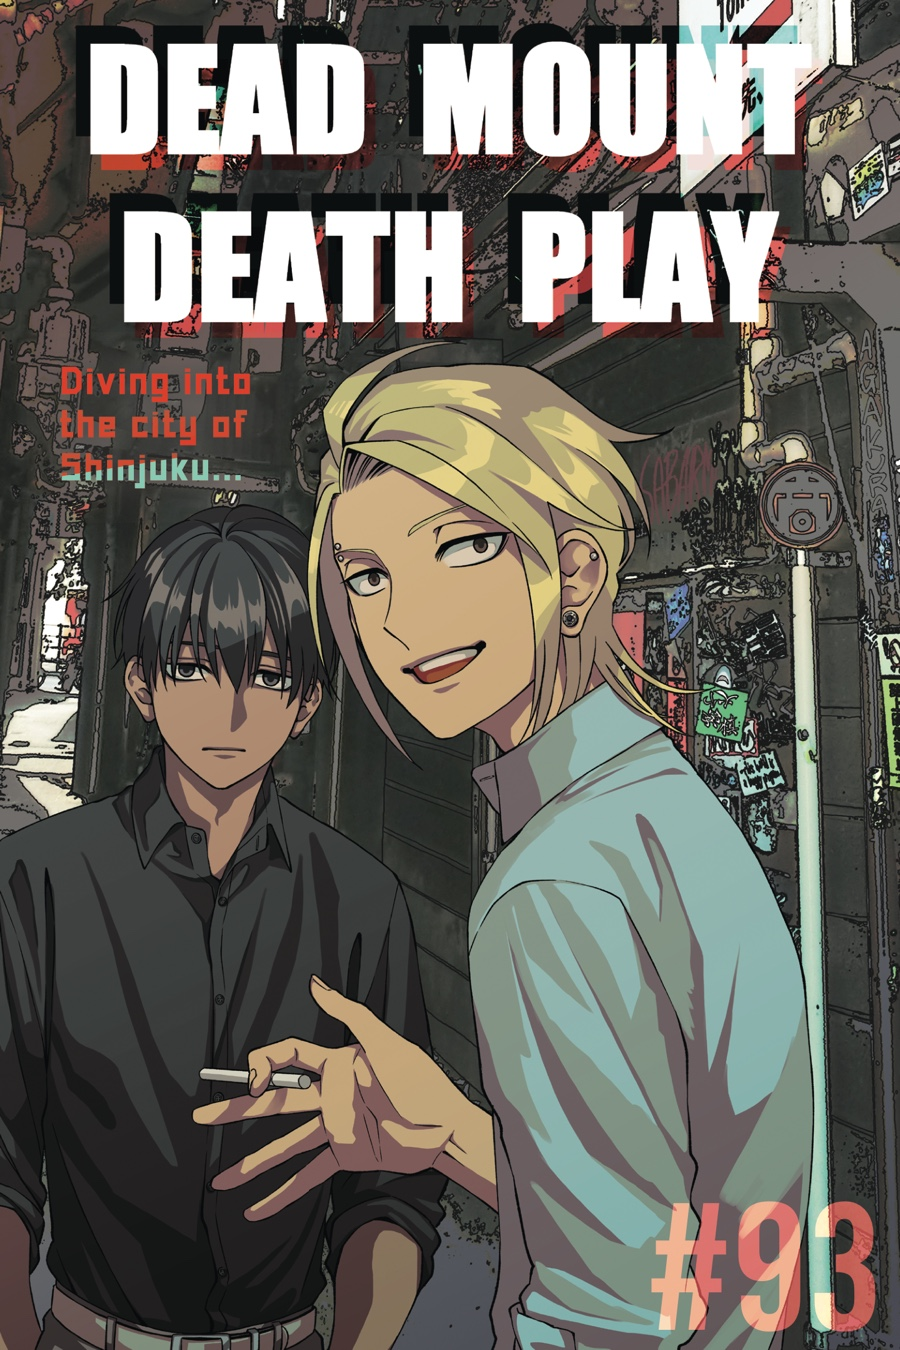 Dead Mount Death Play 93 Chapter 93 | Dead Mount Death Play Wiki | Fandom